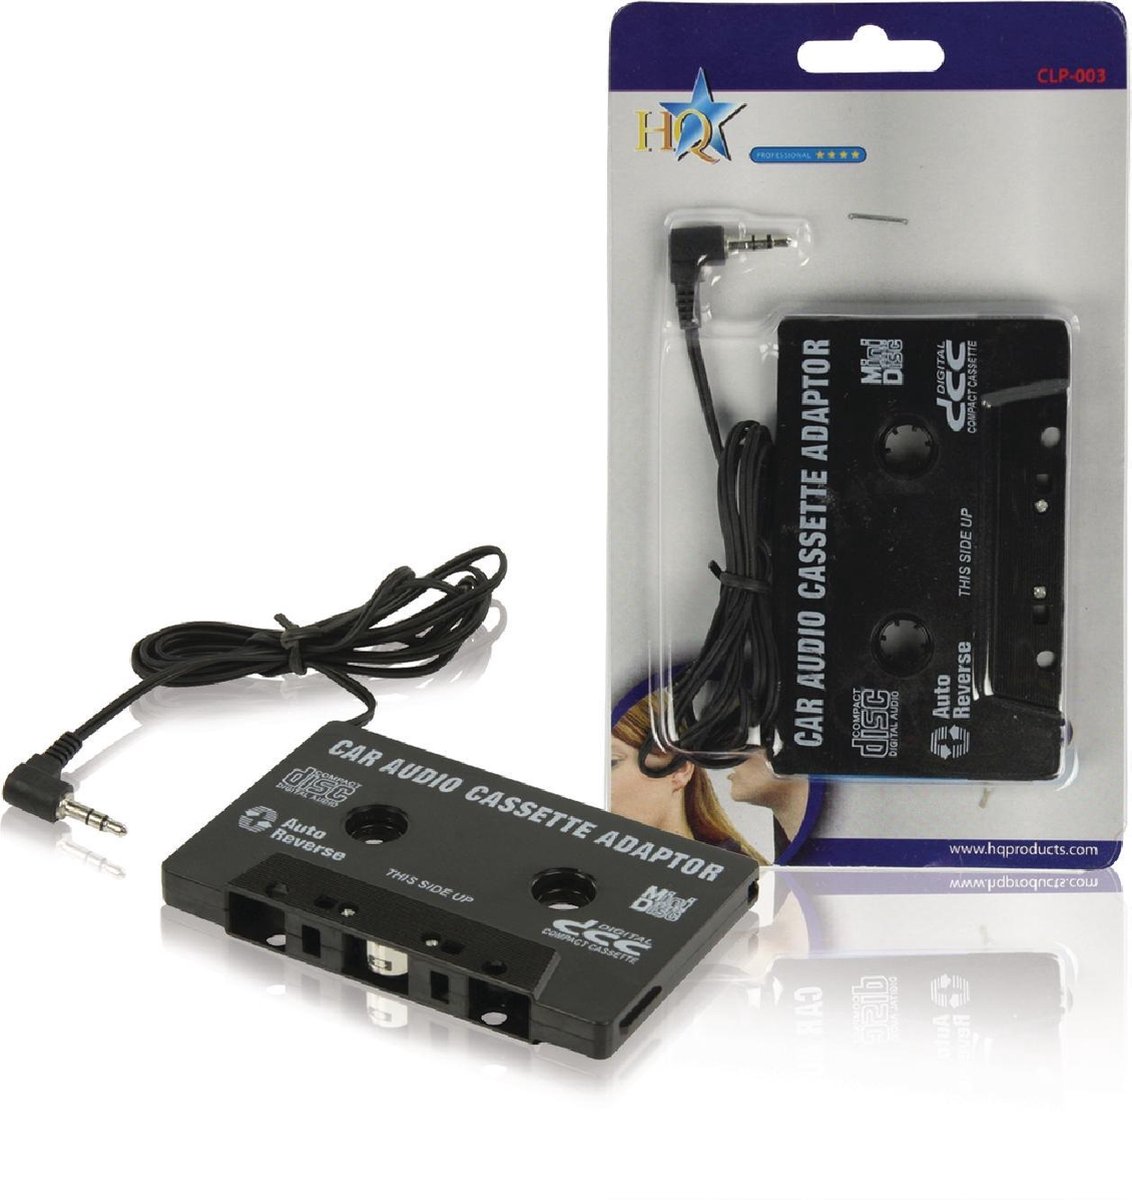 WiseGoods Premium Auto Casette Adapter - Autoradio Cassette Speler